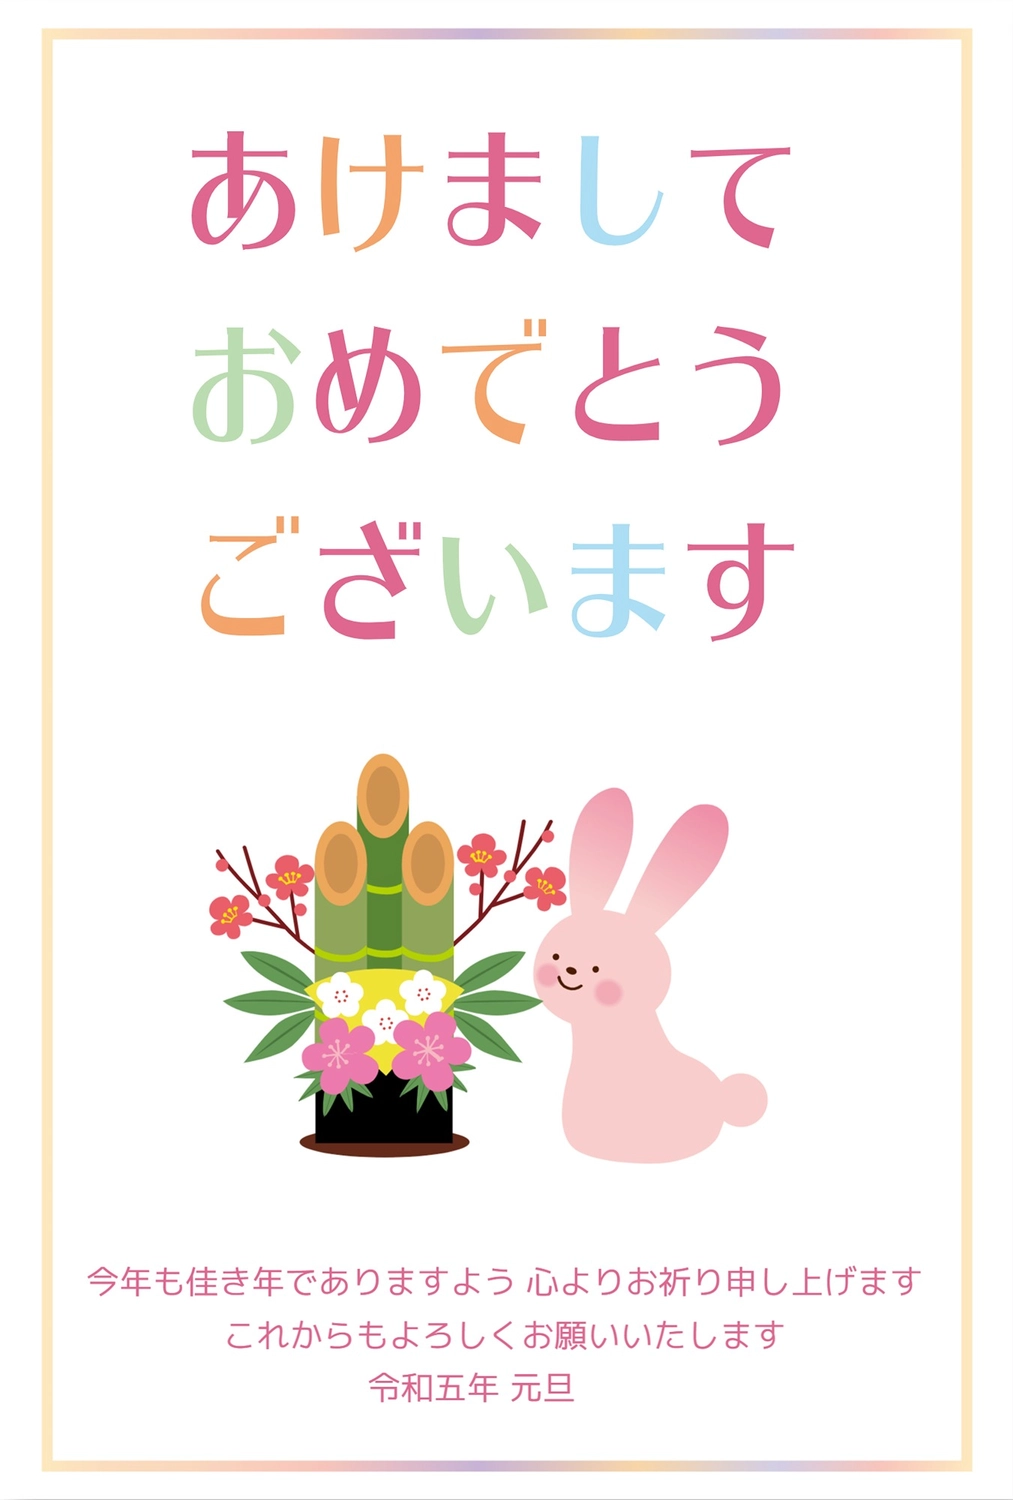 ピンクのウサギと門松, 年賀状, 令和, ラビット, 年賀状テンプレート